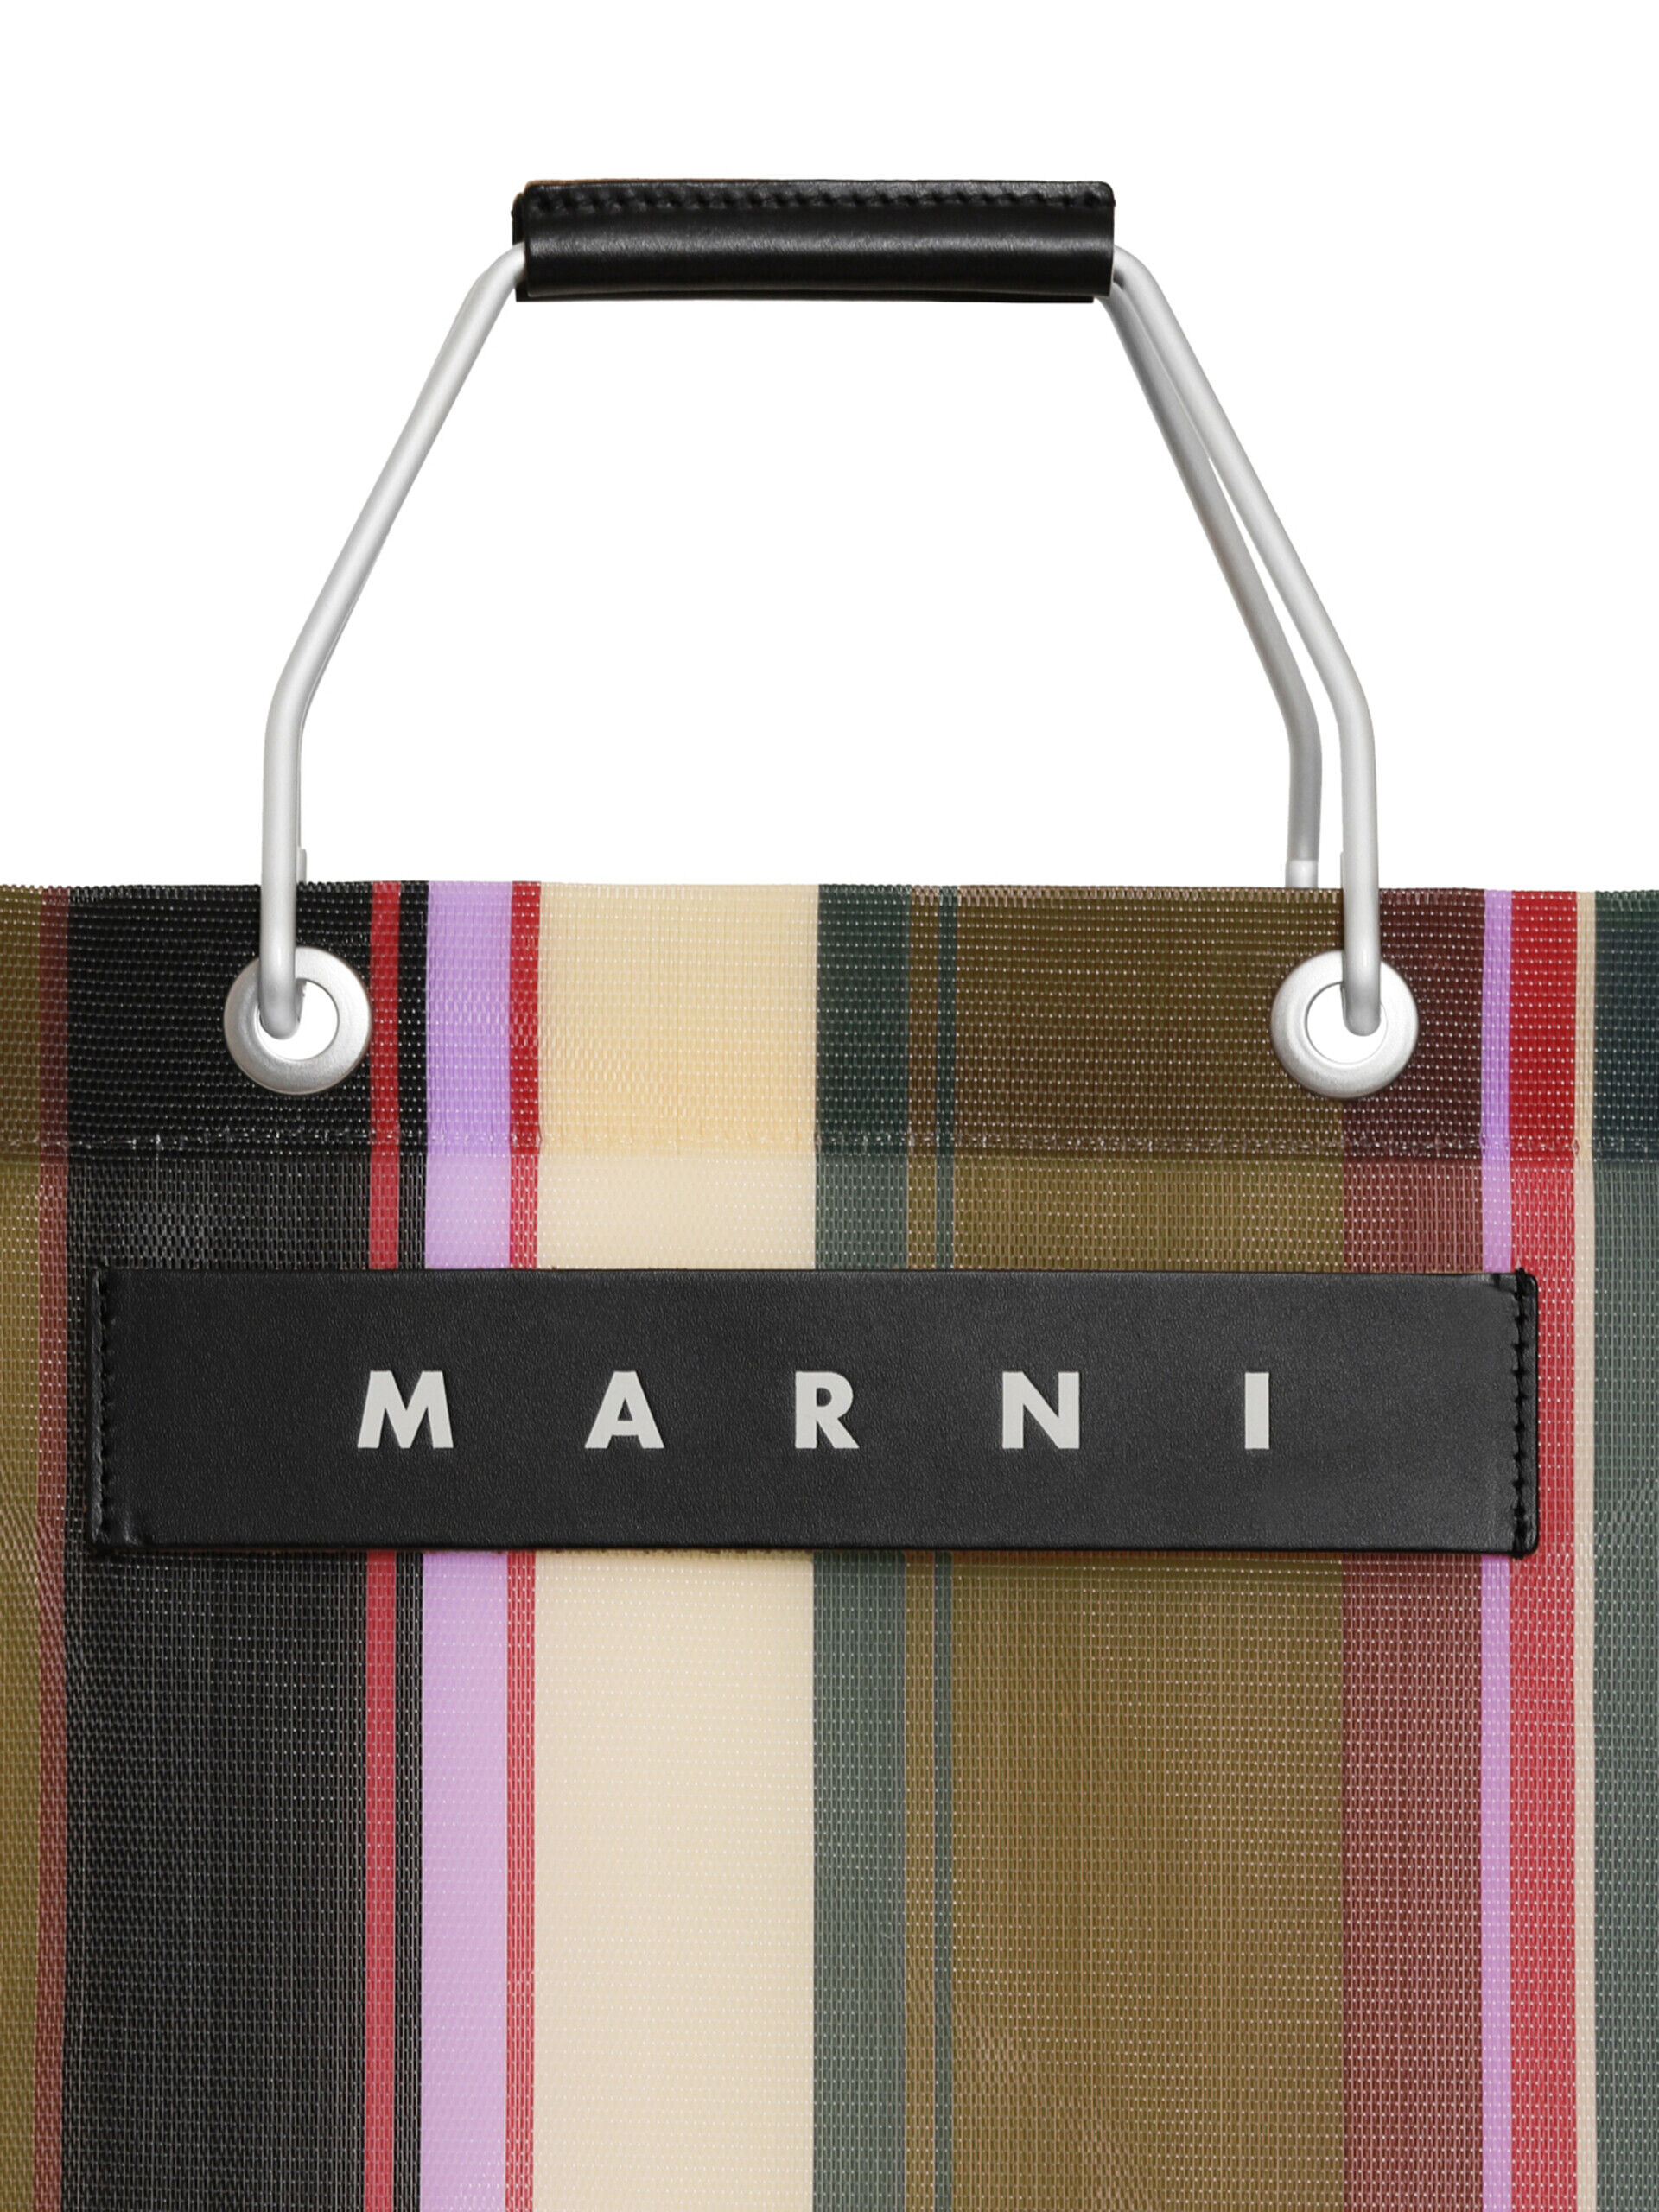 キャラメル(キャラメルブラウン) MARNI MARKET STRIPE BAG | Marni